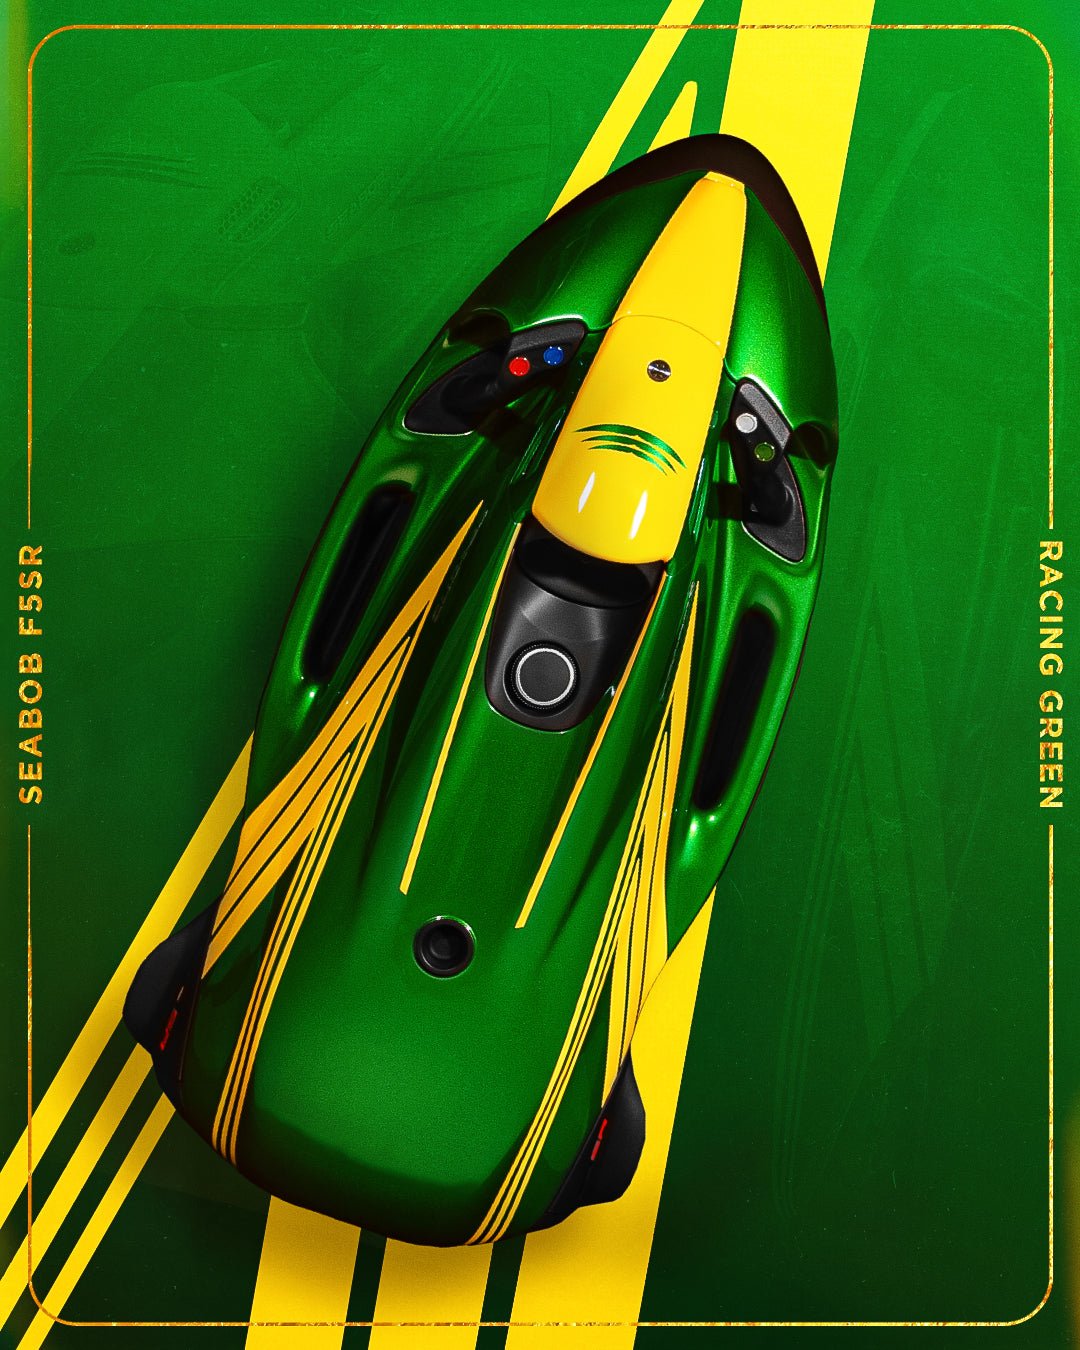 Seabob F5SR Racing Green incl. Camera - Haller Experiences